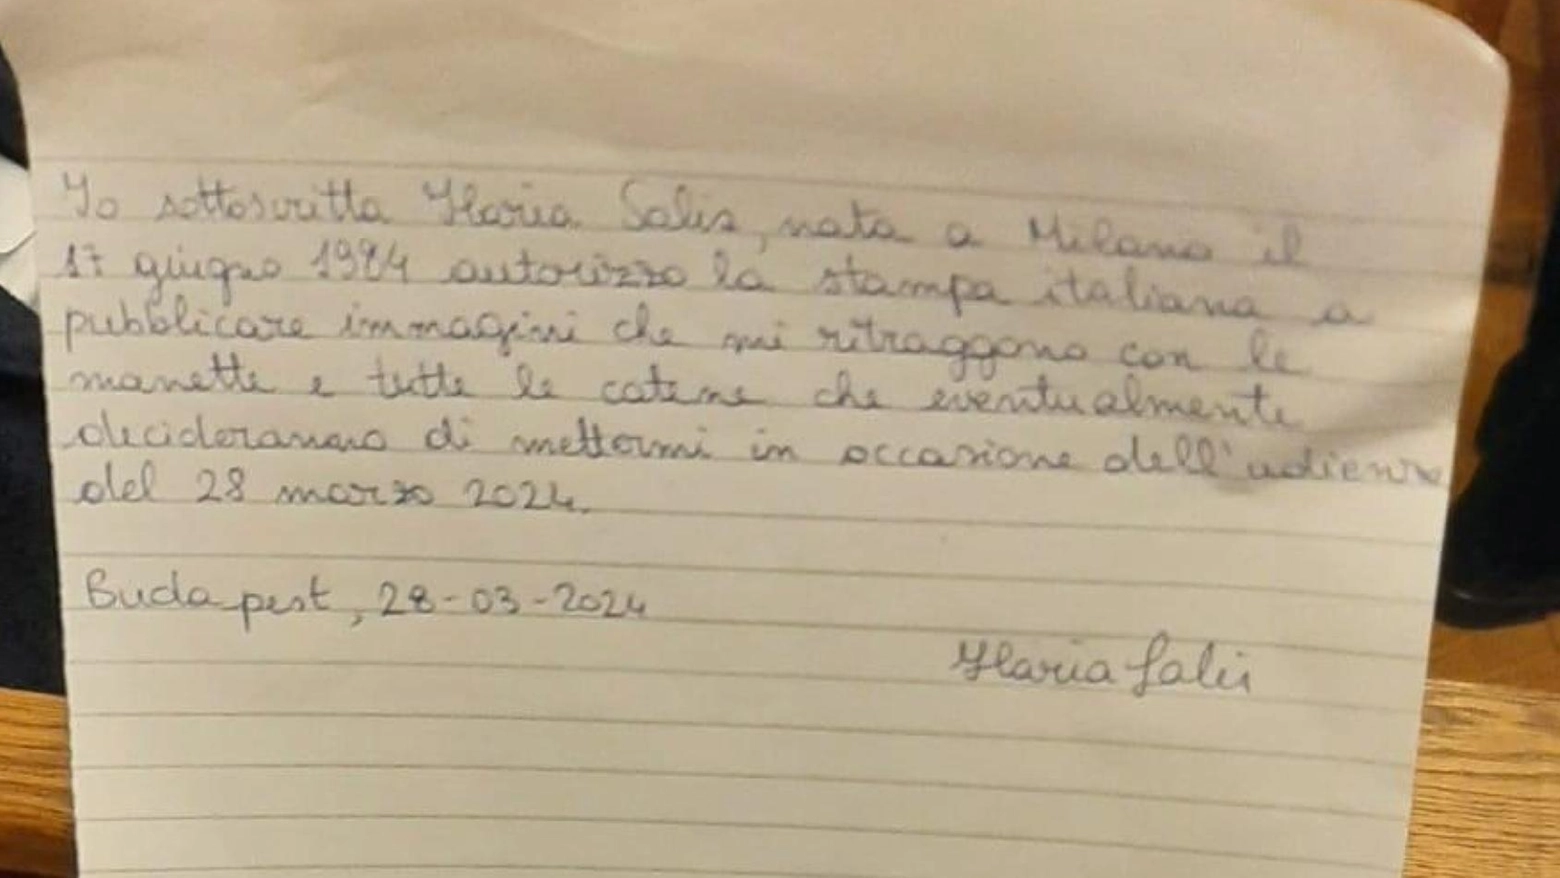 Lettera di Ilaria Salis, dove autorizza le foto con le manette